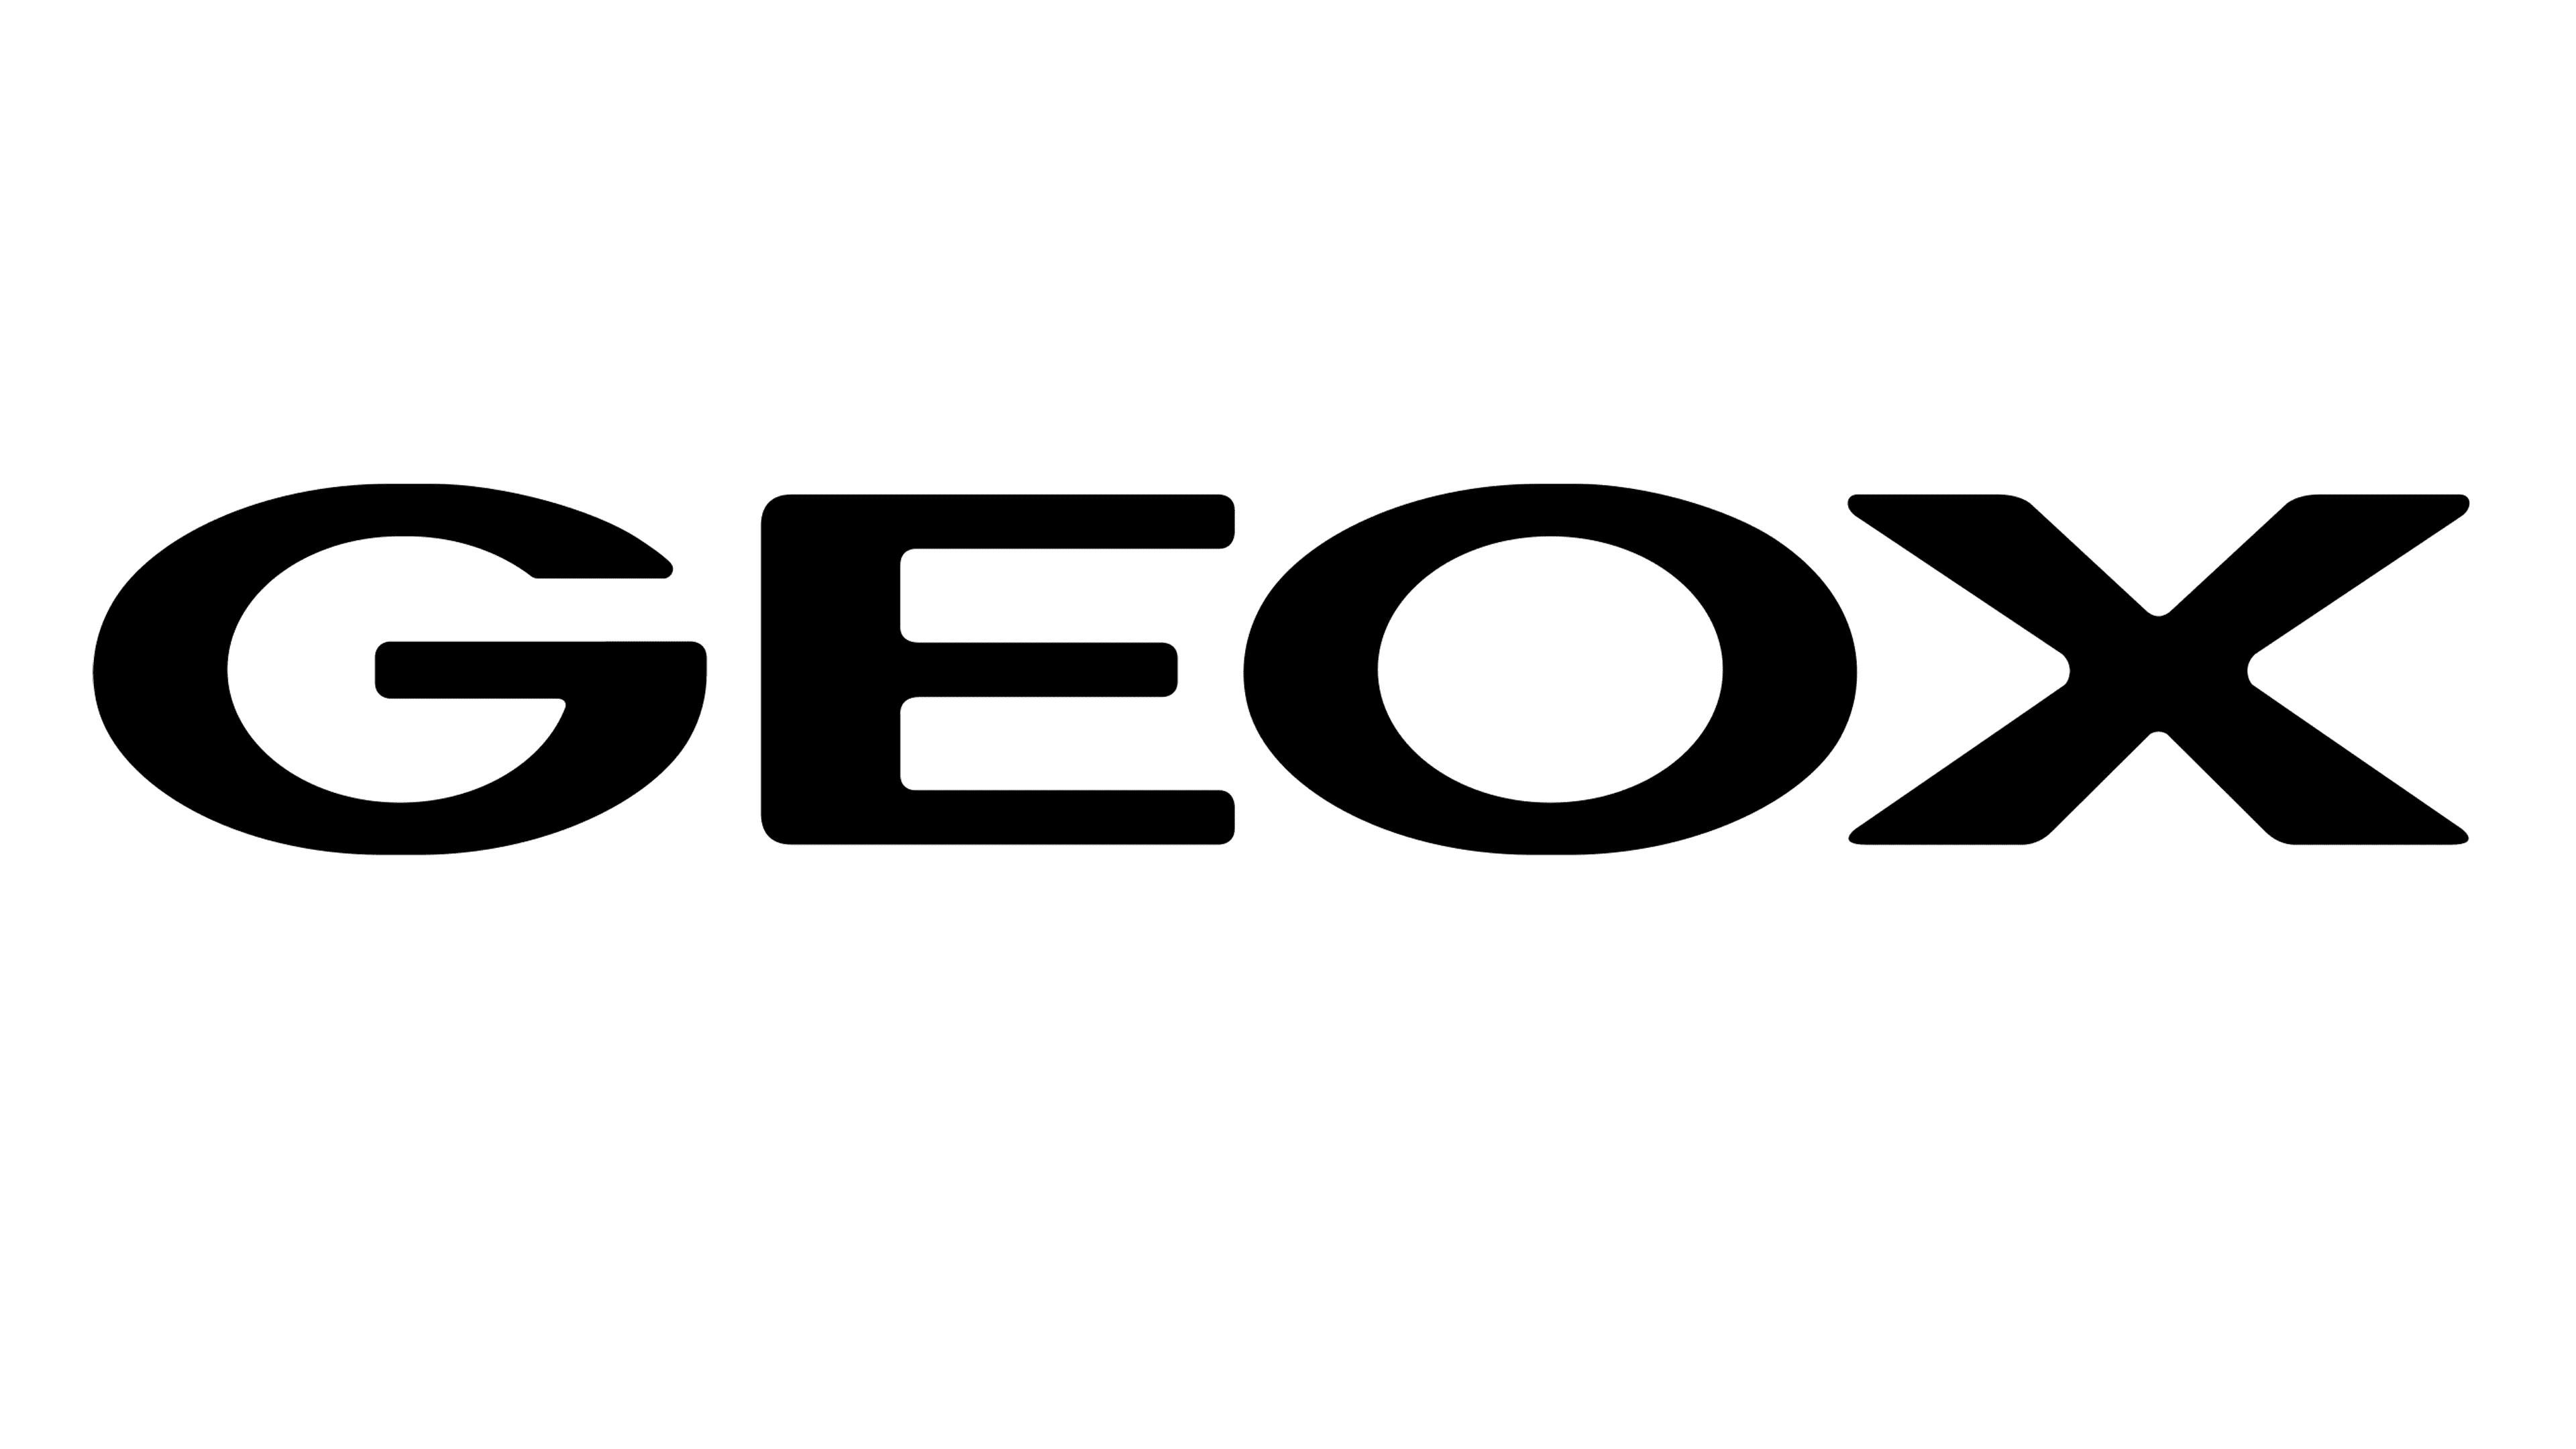 geox origin